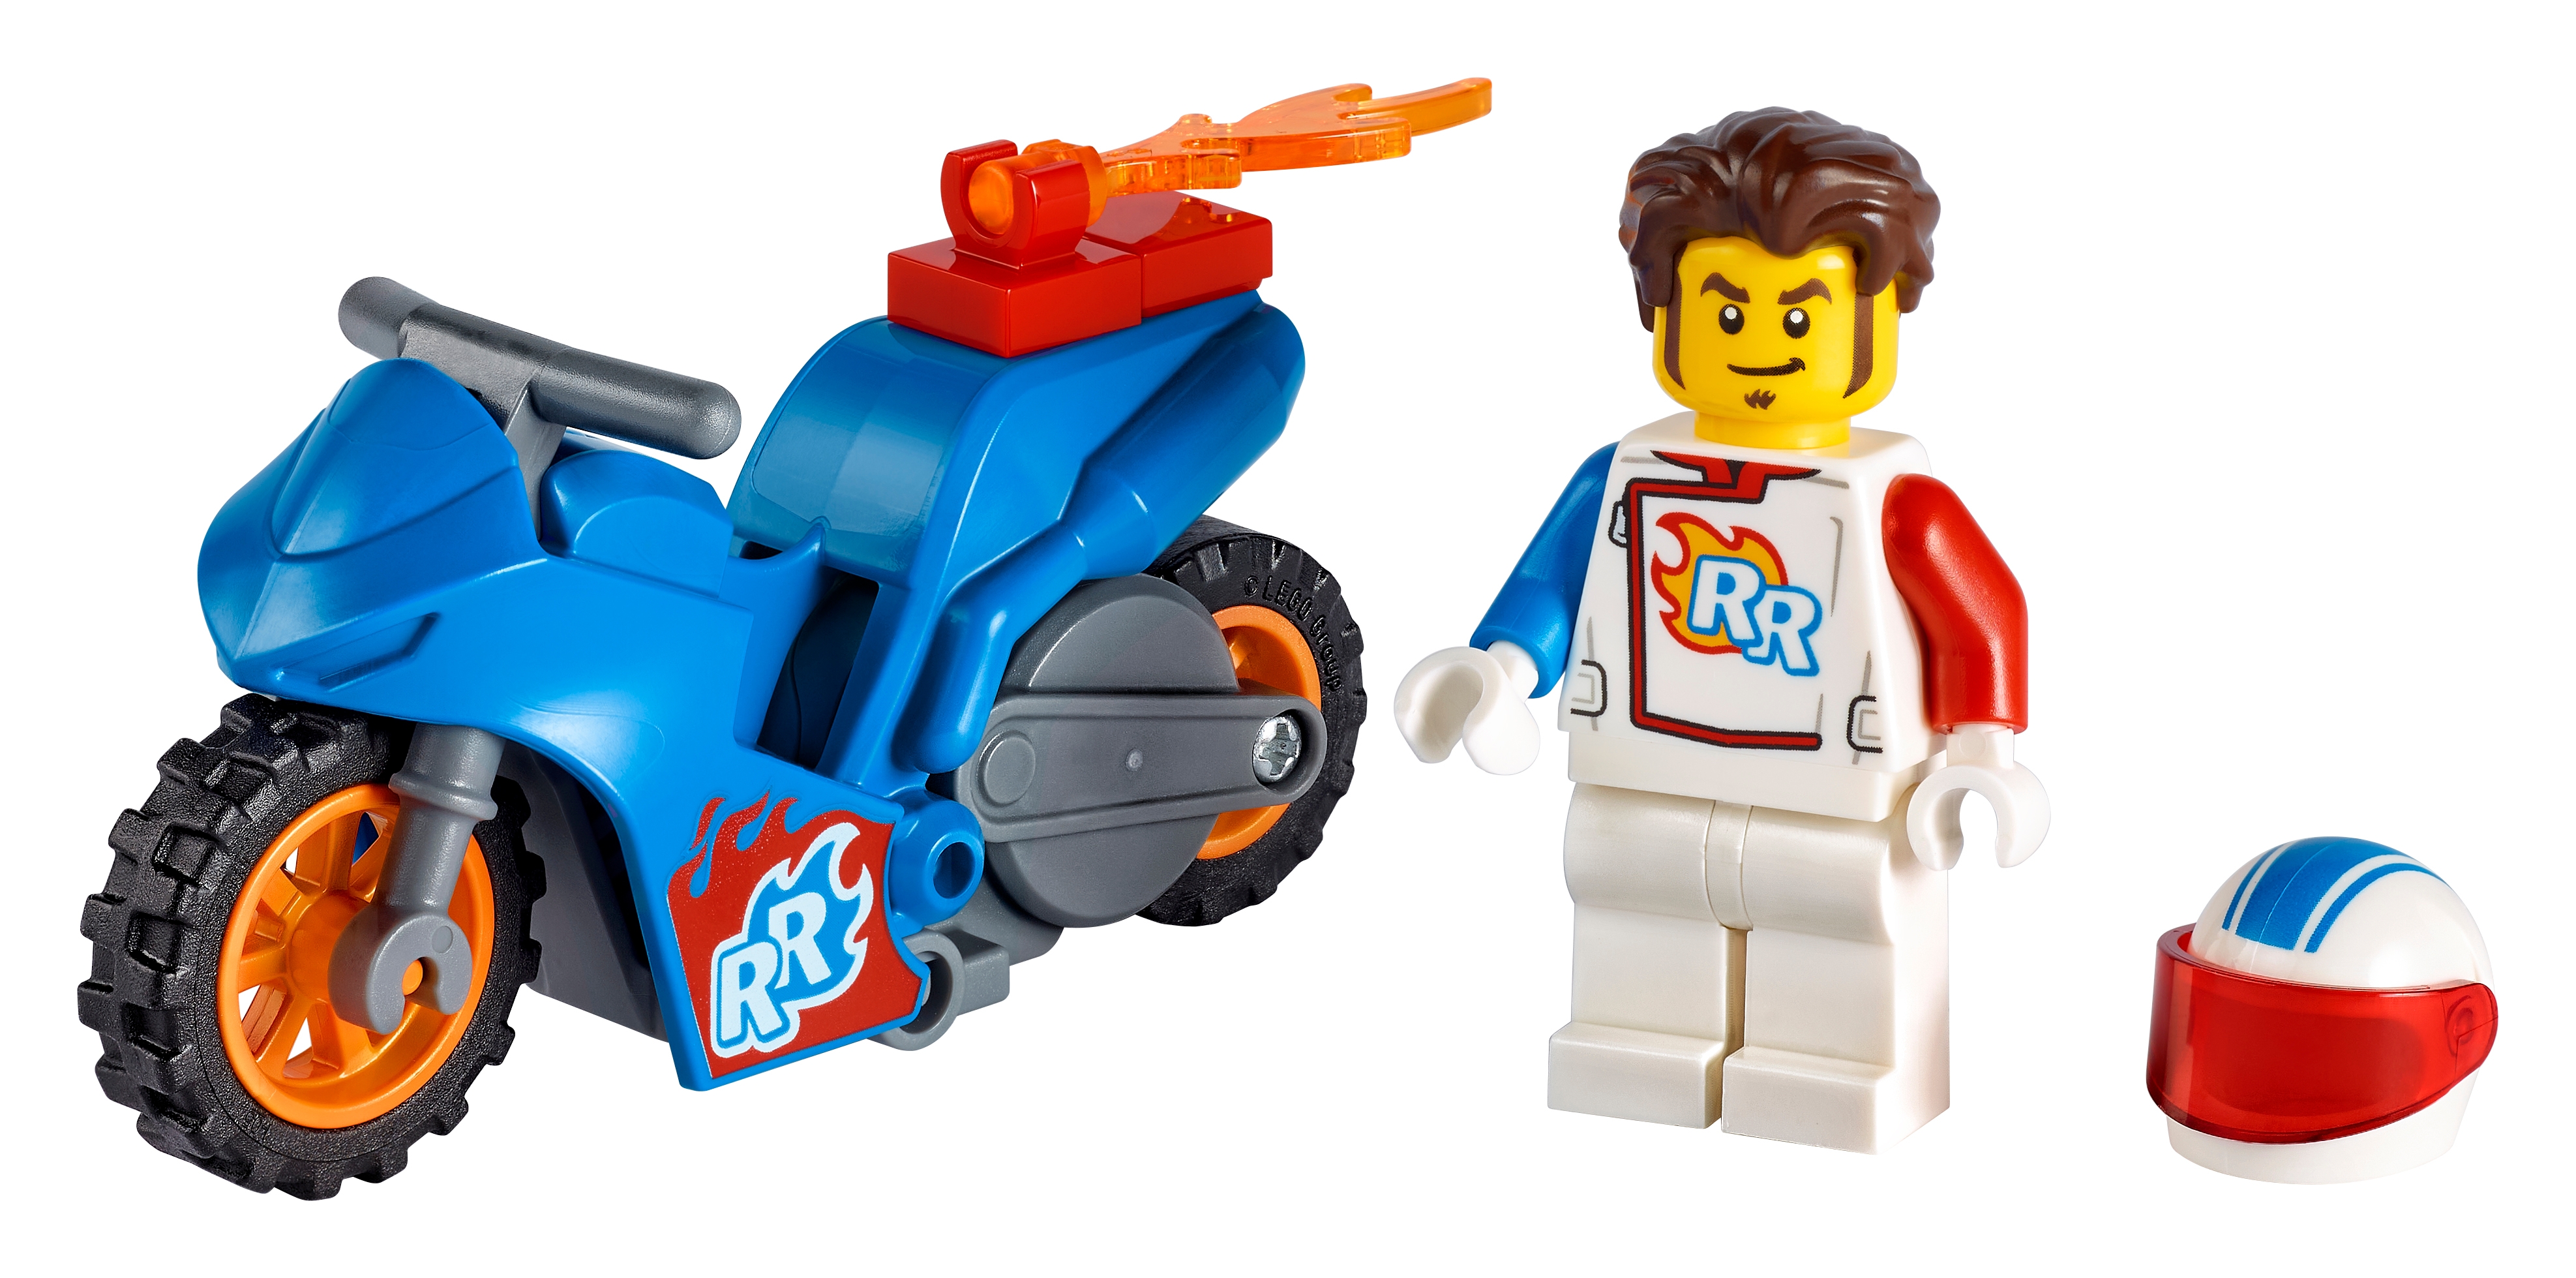 60298 LEGO CITY Rocket Stunt Bike Set includes Pieces Age 